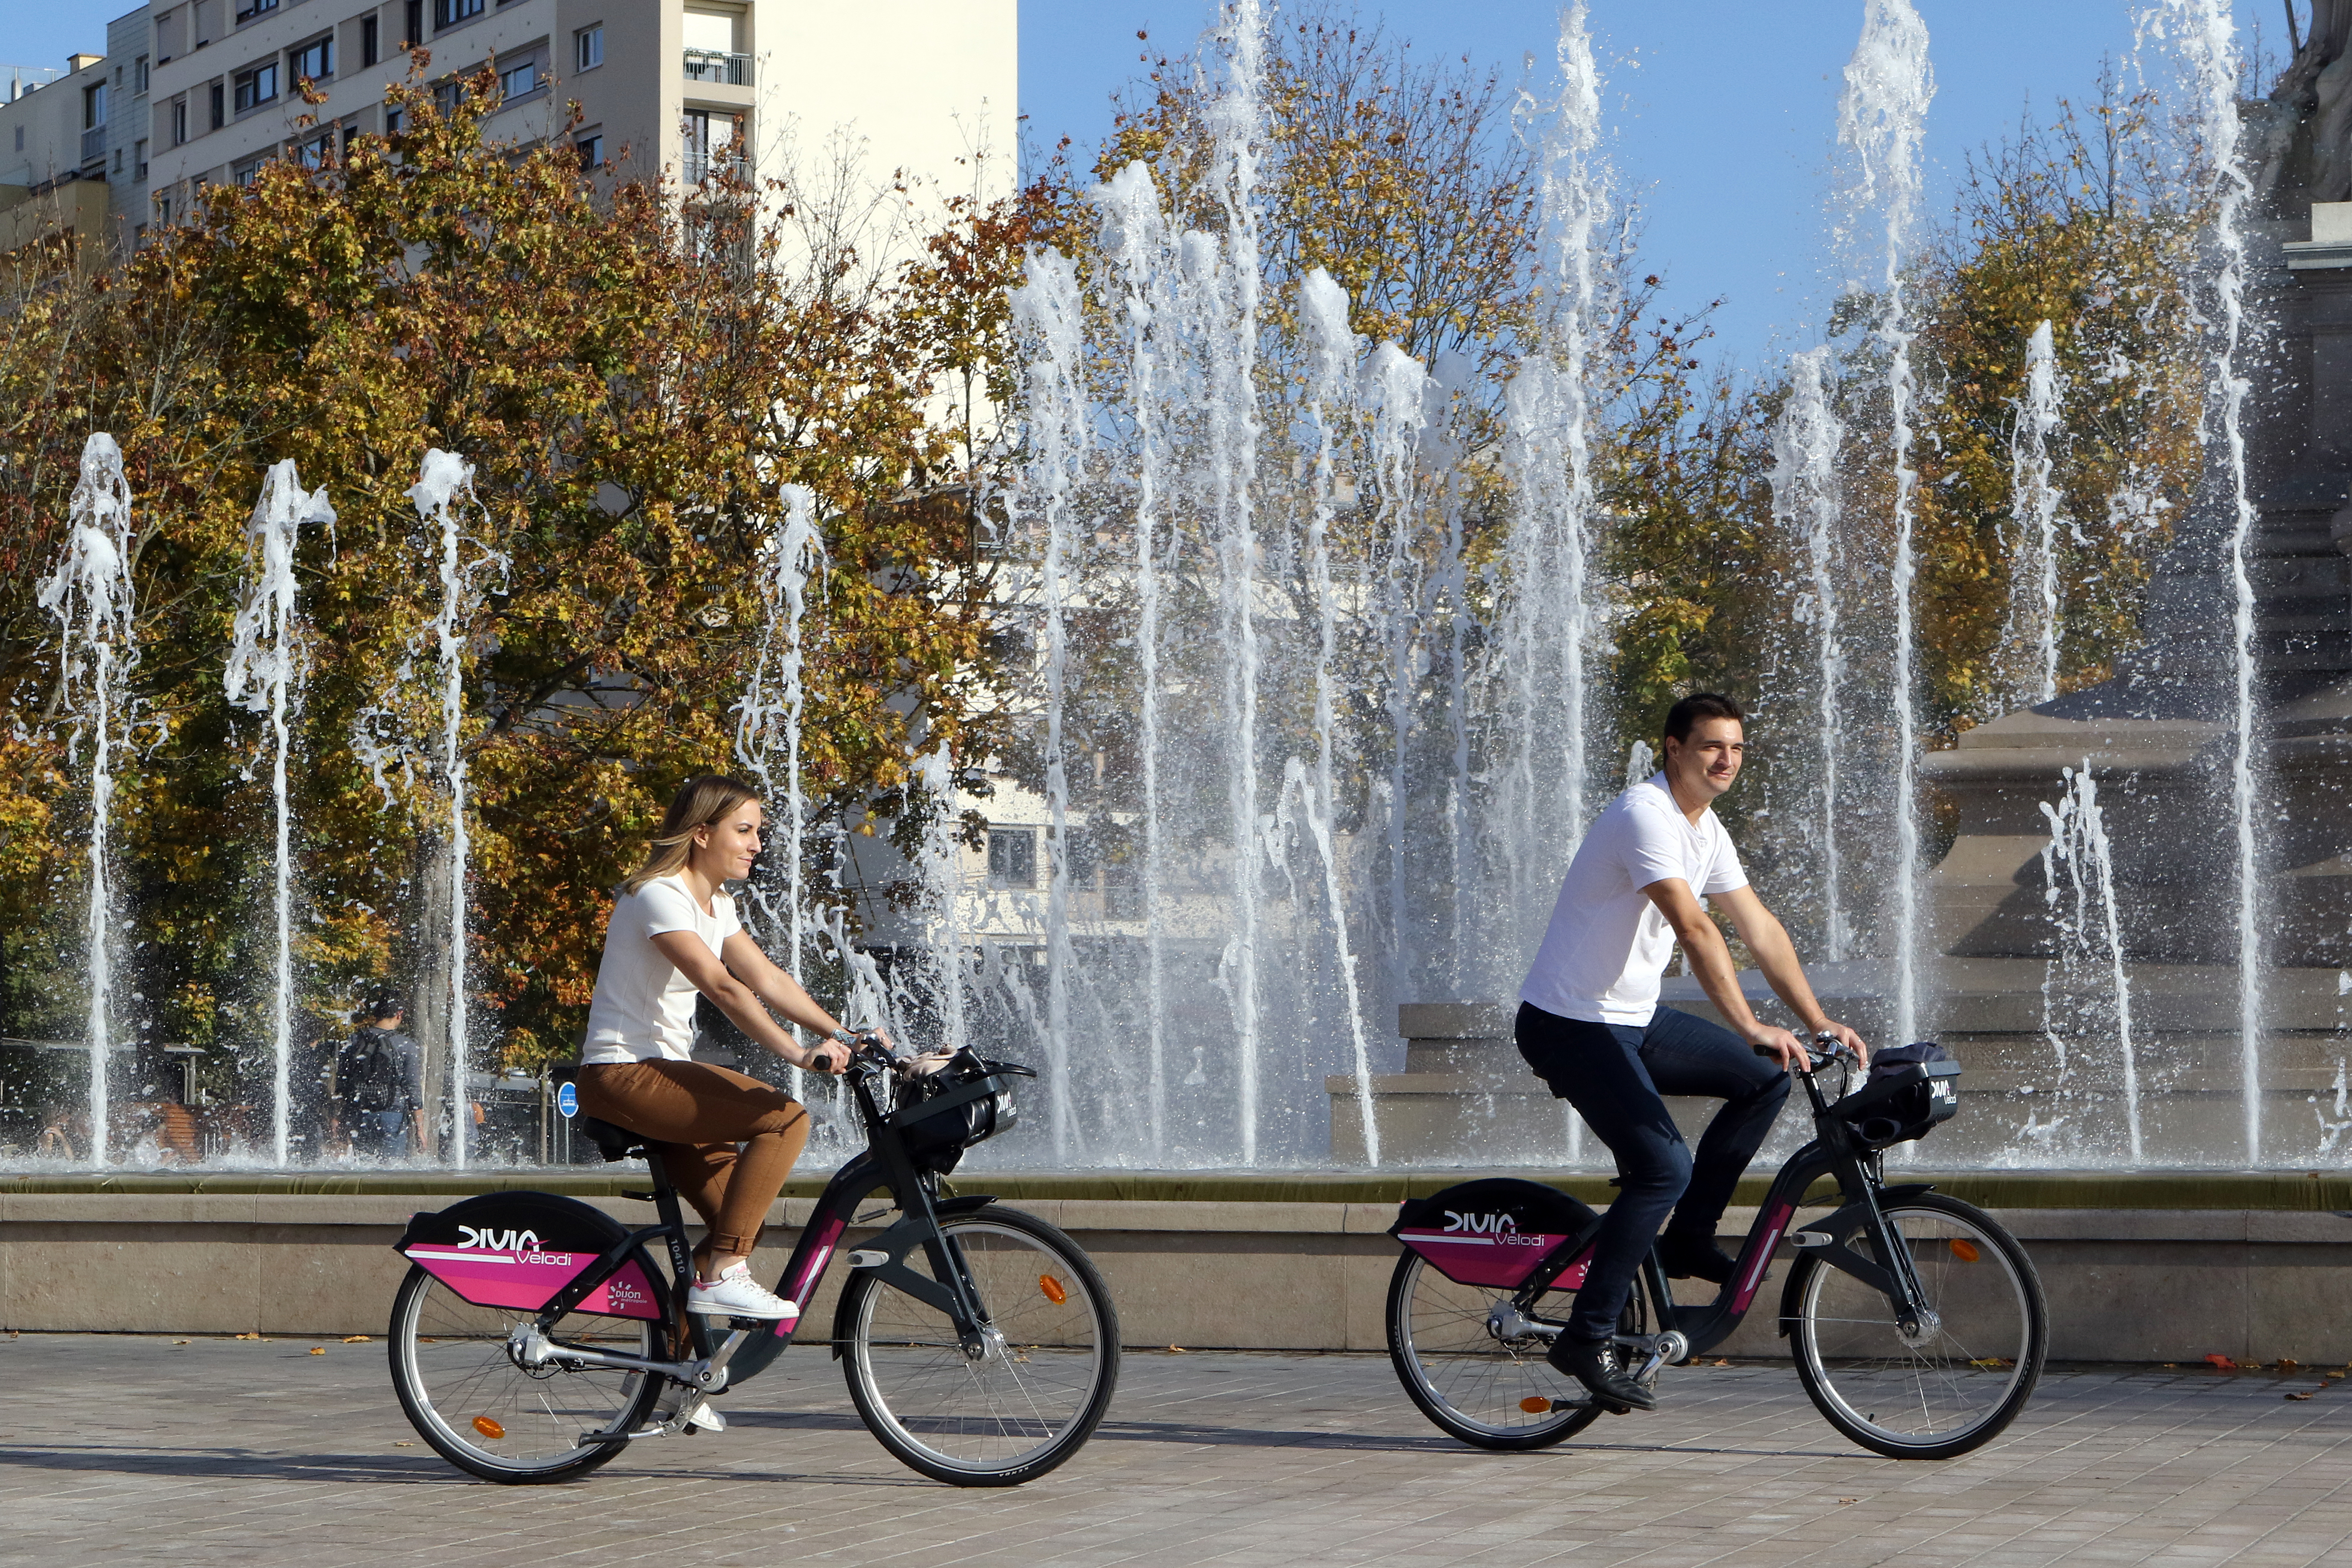 Cyclistes dans la ville de Dijon